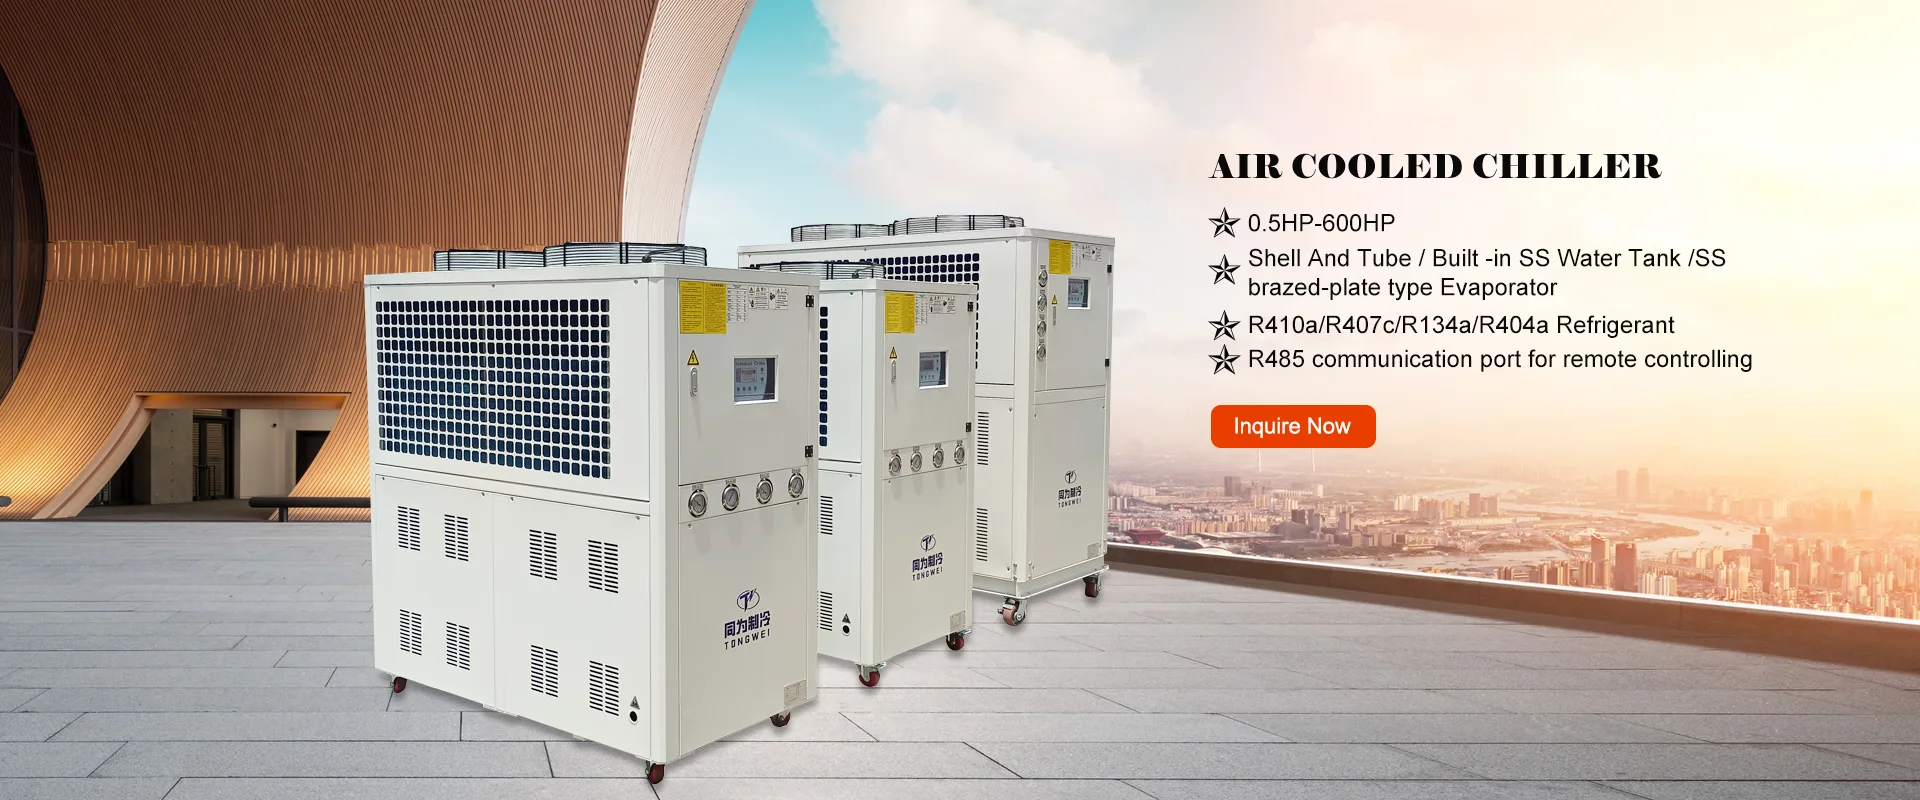 Fornitori di refrigeratori industriali raffreddati ad aria in Cina